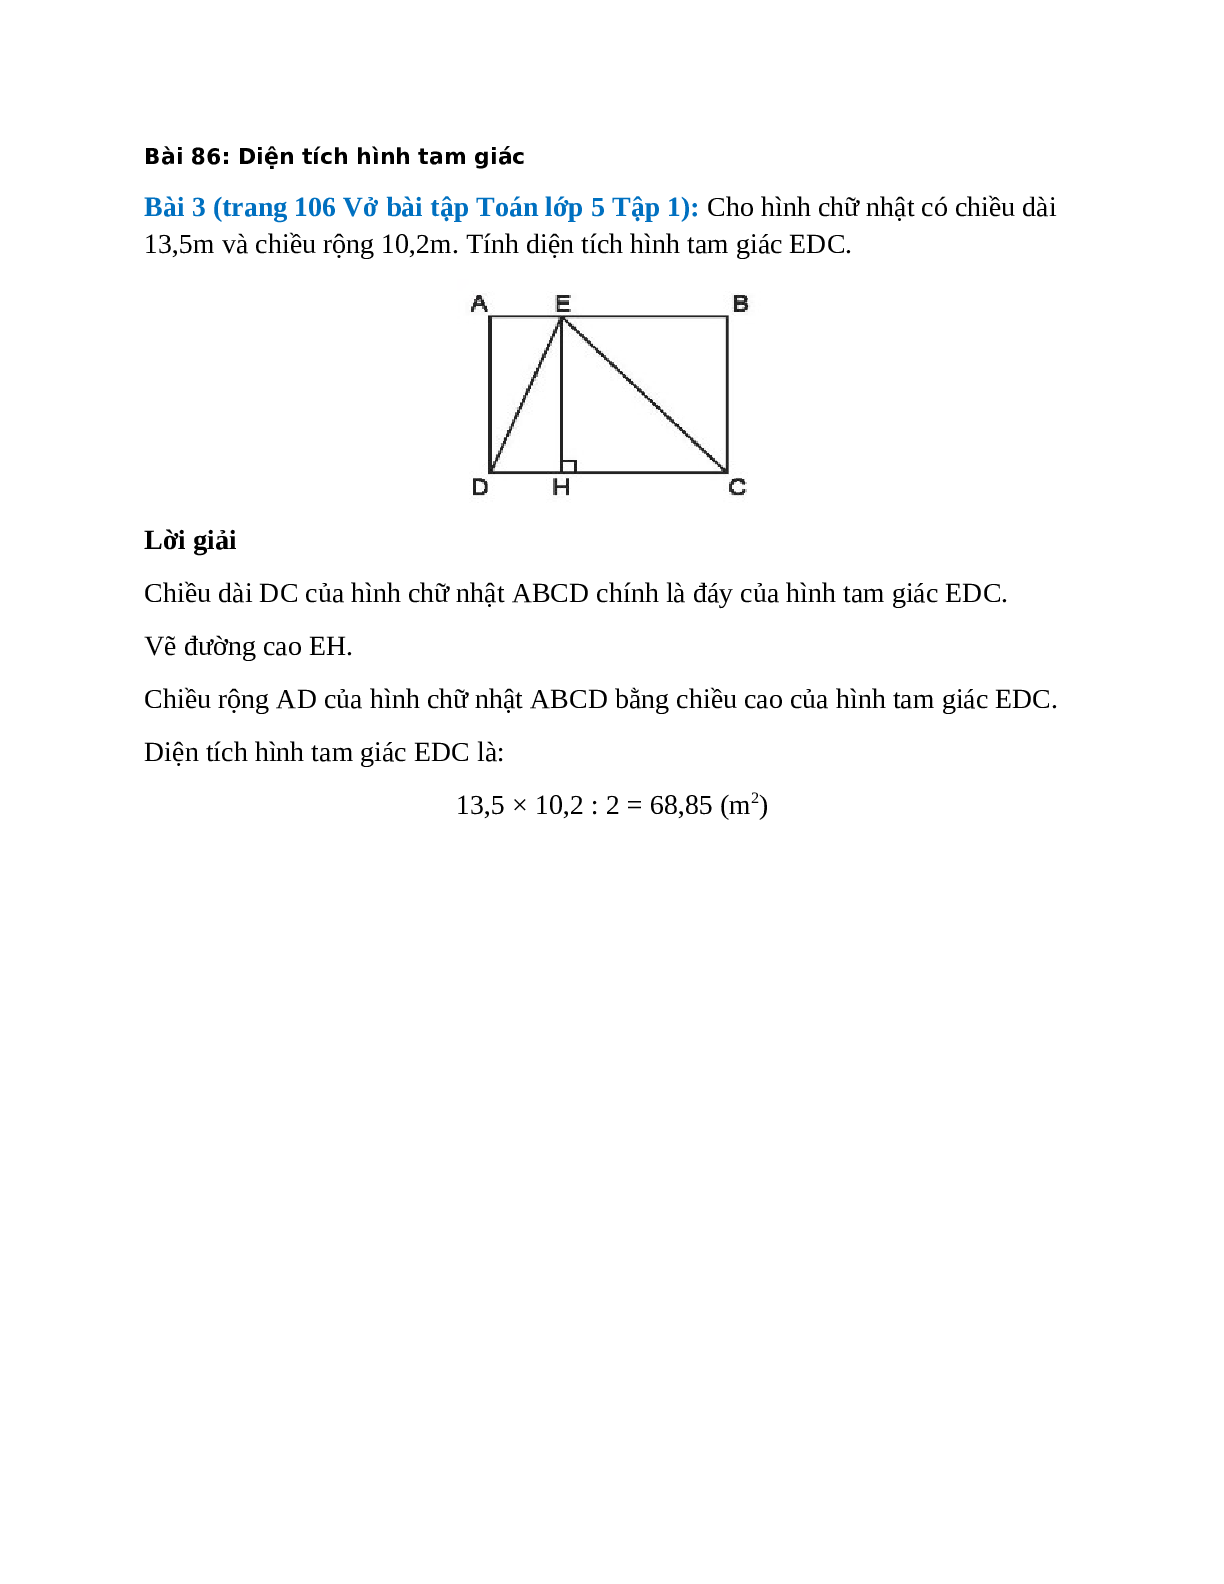 Cho hình chữ nhật có chiều dài 13,5m và chiều rộng 10,2m. Tính diện tích hình tam giác EDC (trang 1)